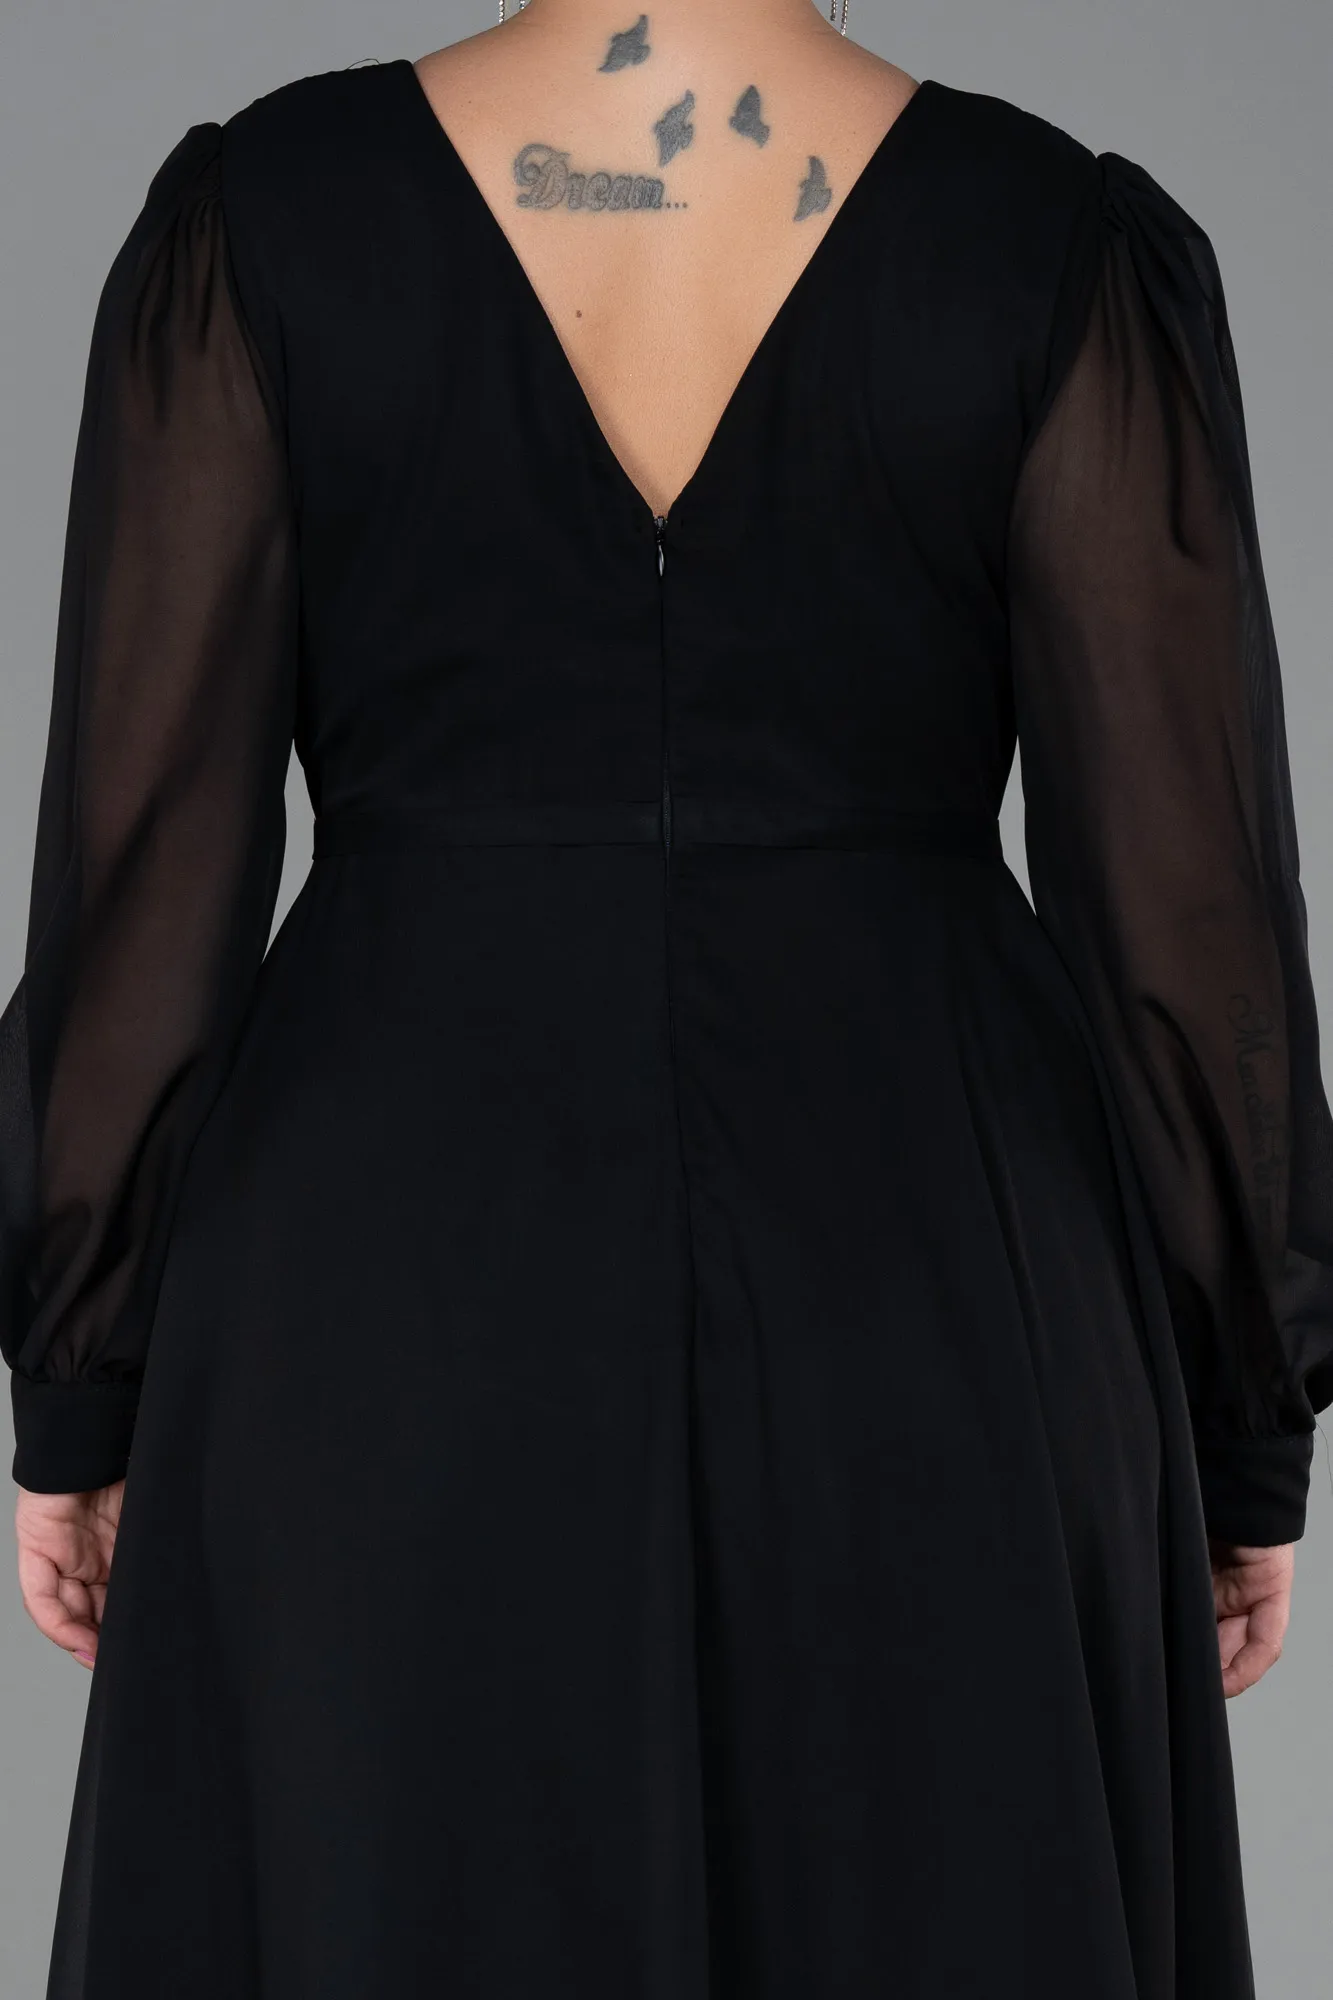 Black-Long Chiffon Plus Size Evening Dress ABU3254